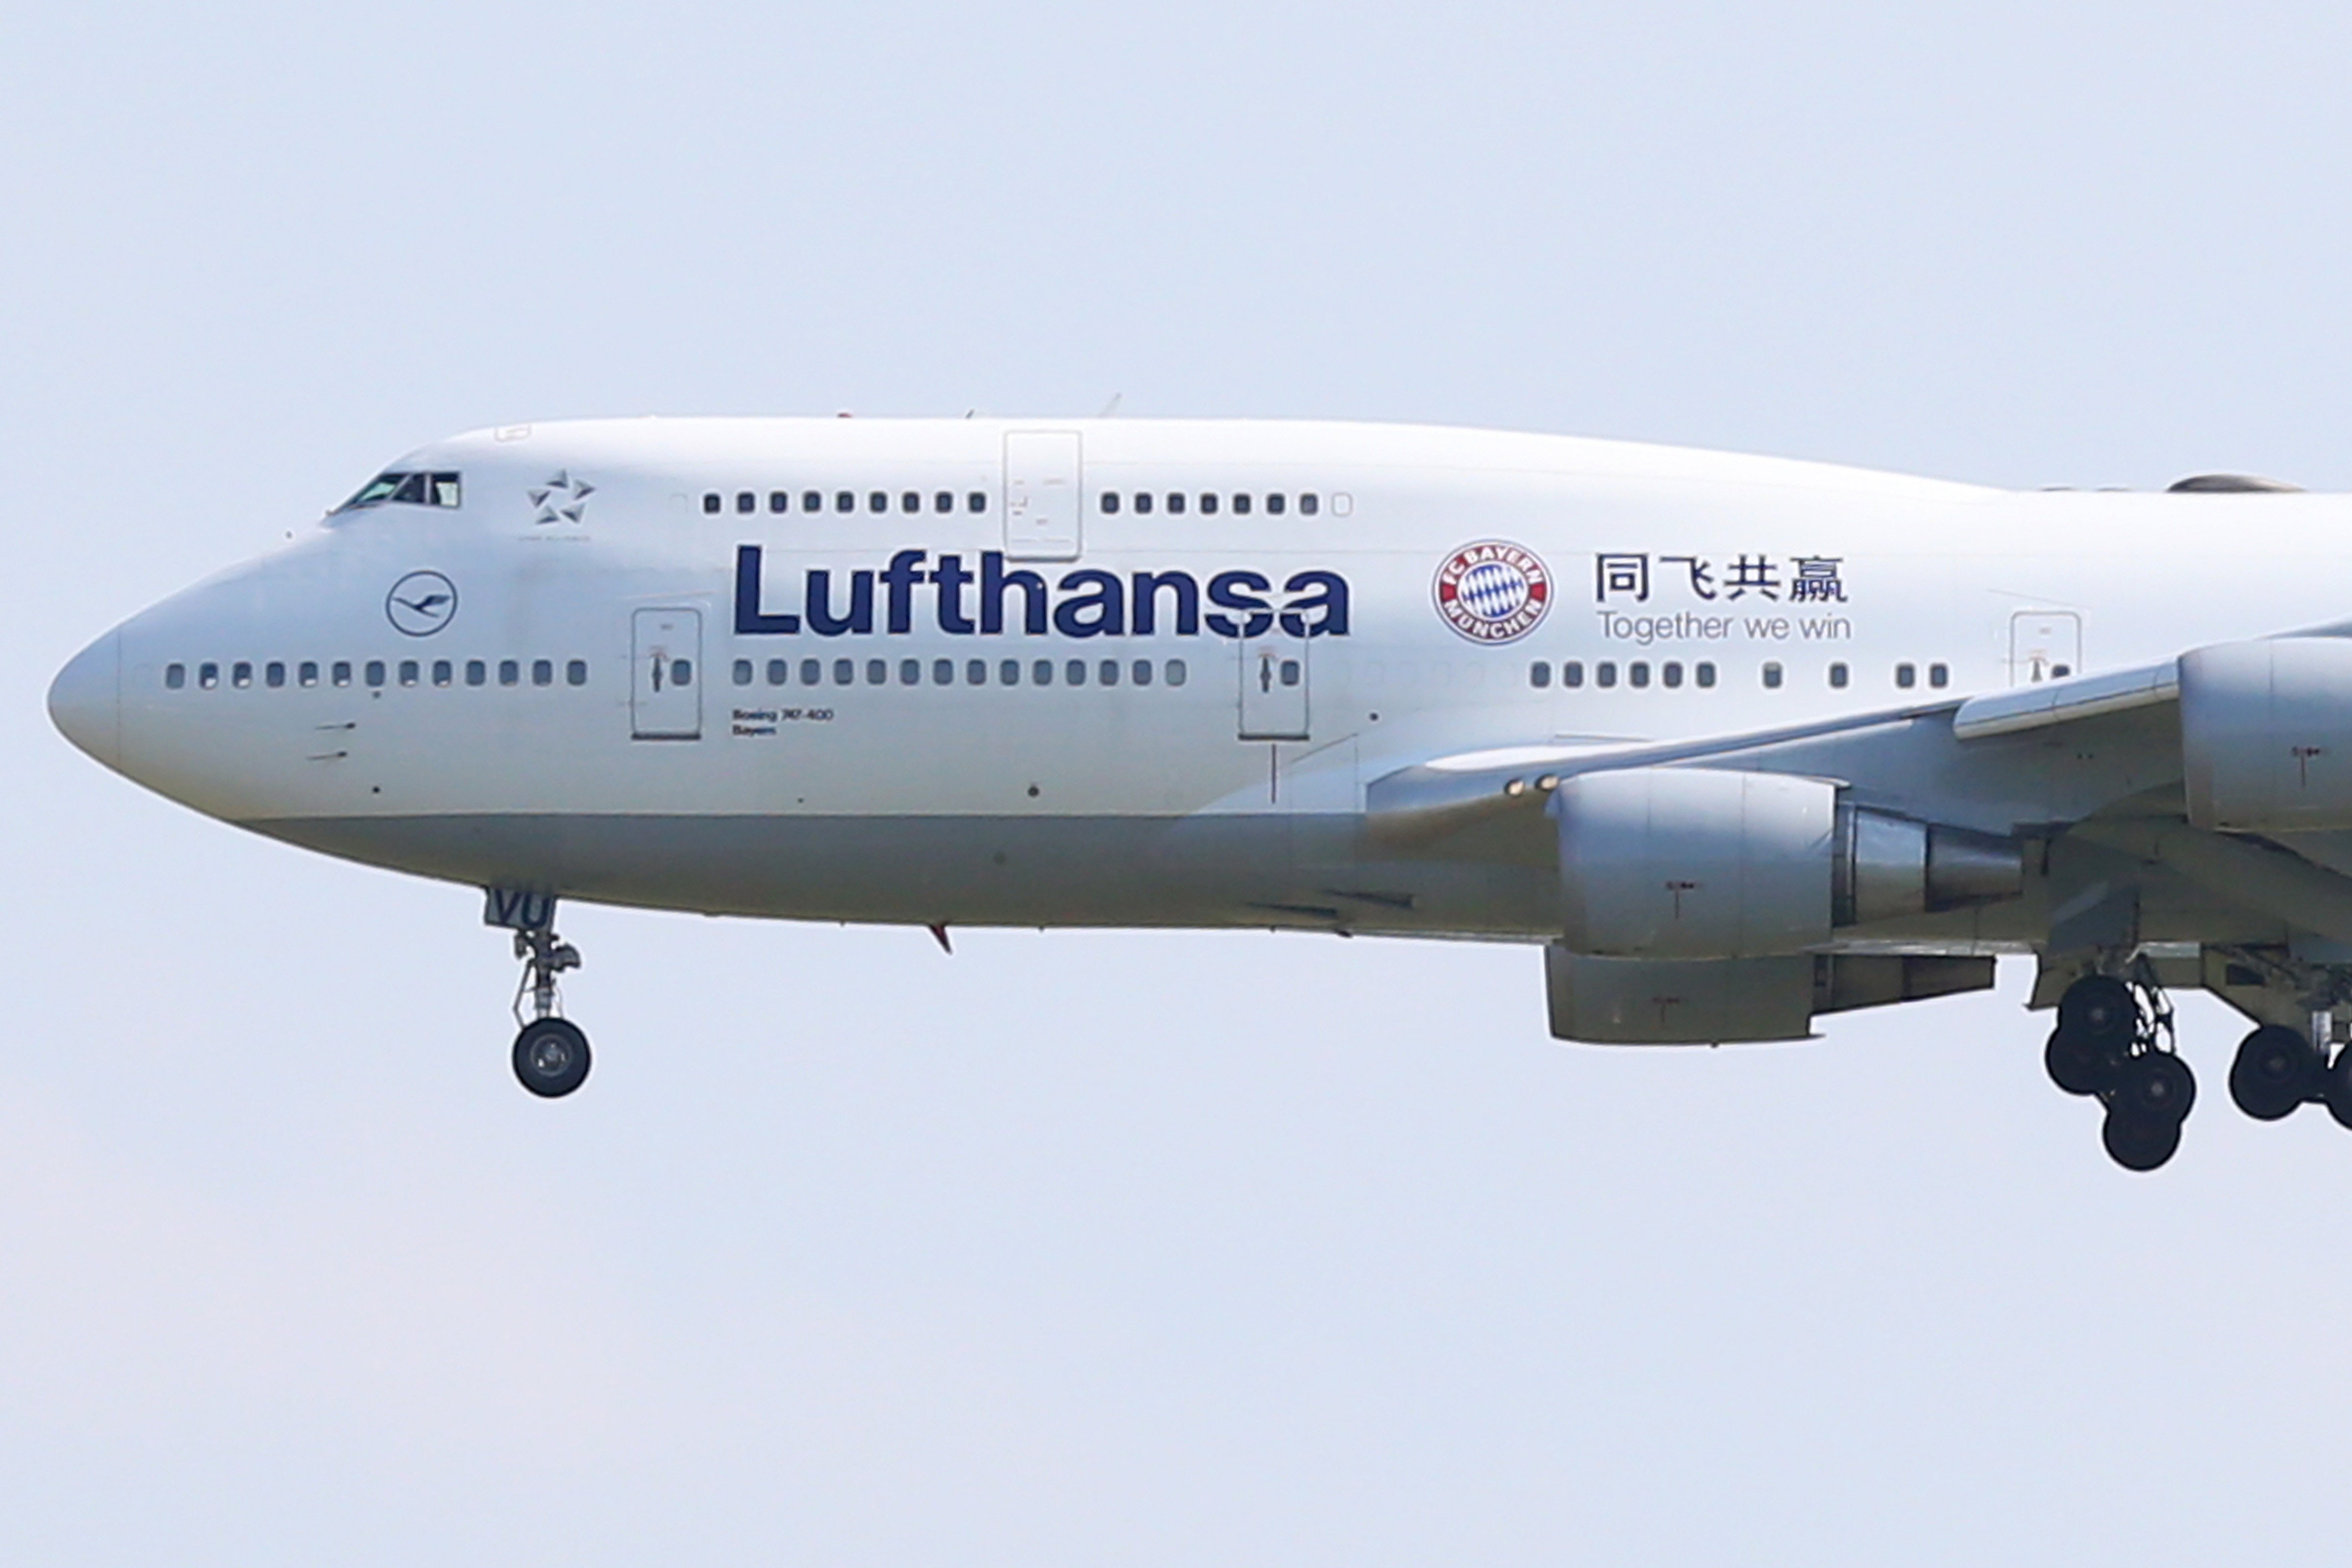 A Lufthansa Boeing 747-400 arrives in Munich International Airport on July 16, 2015. (Alexander Hassenstein—Getty Images)